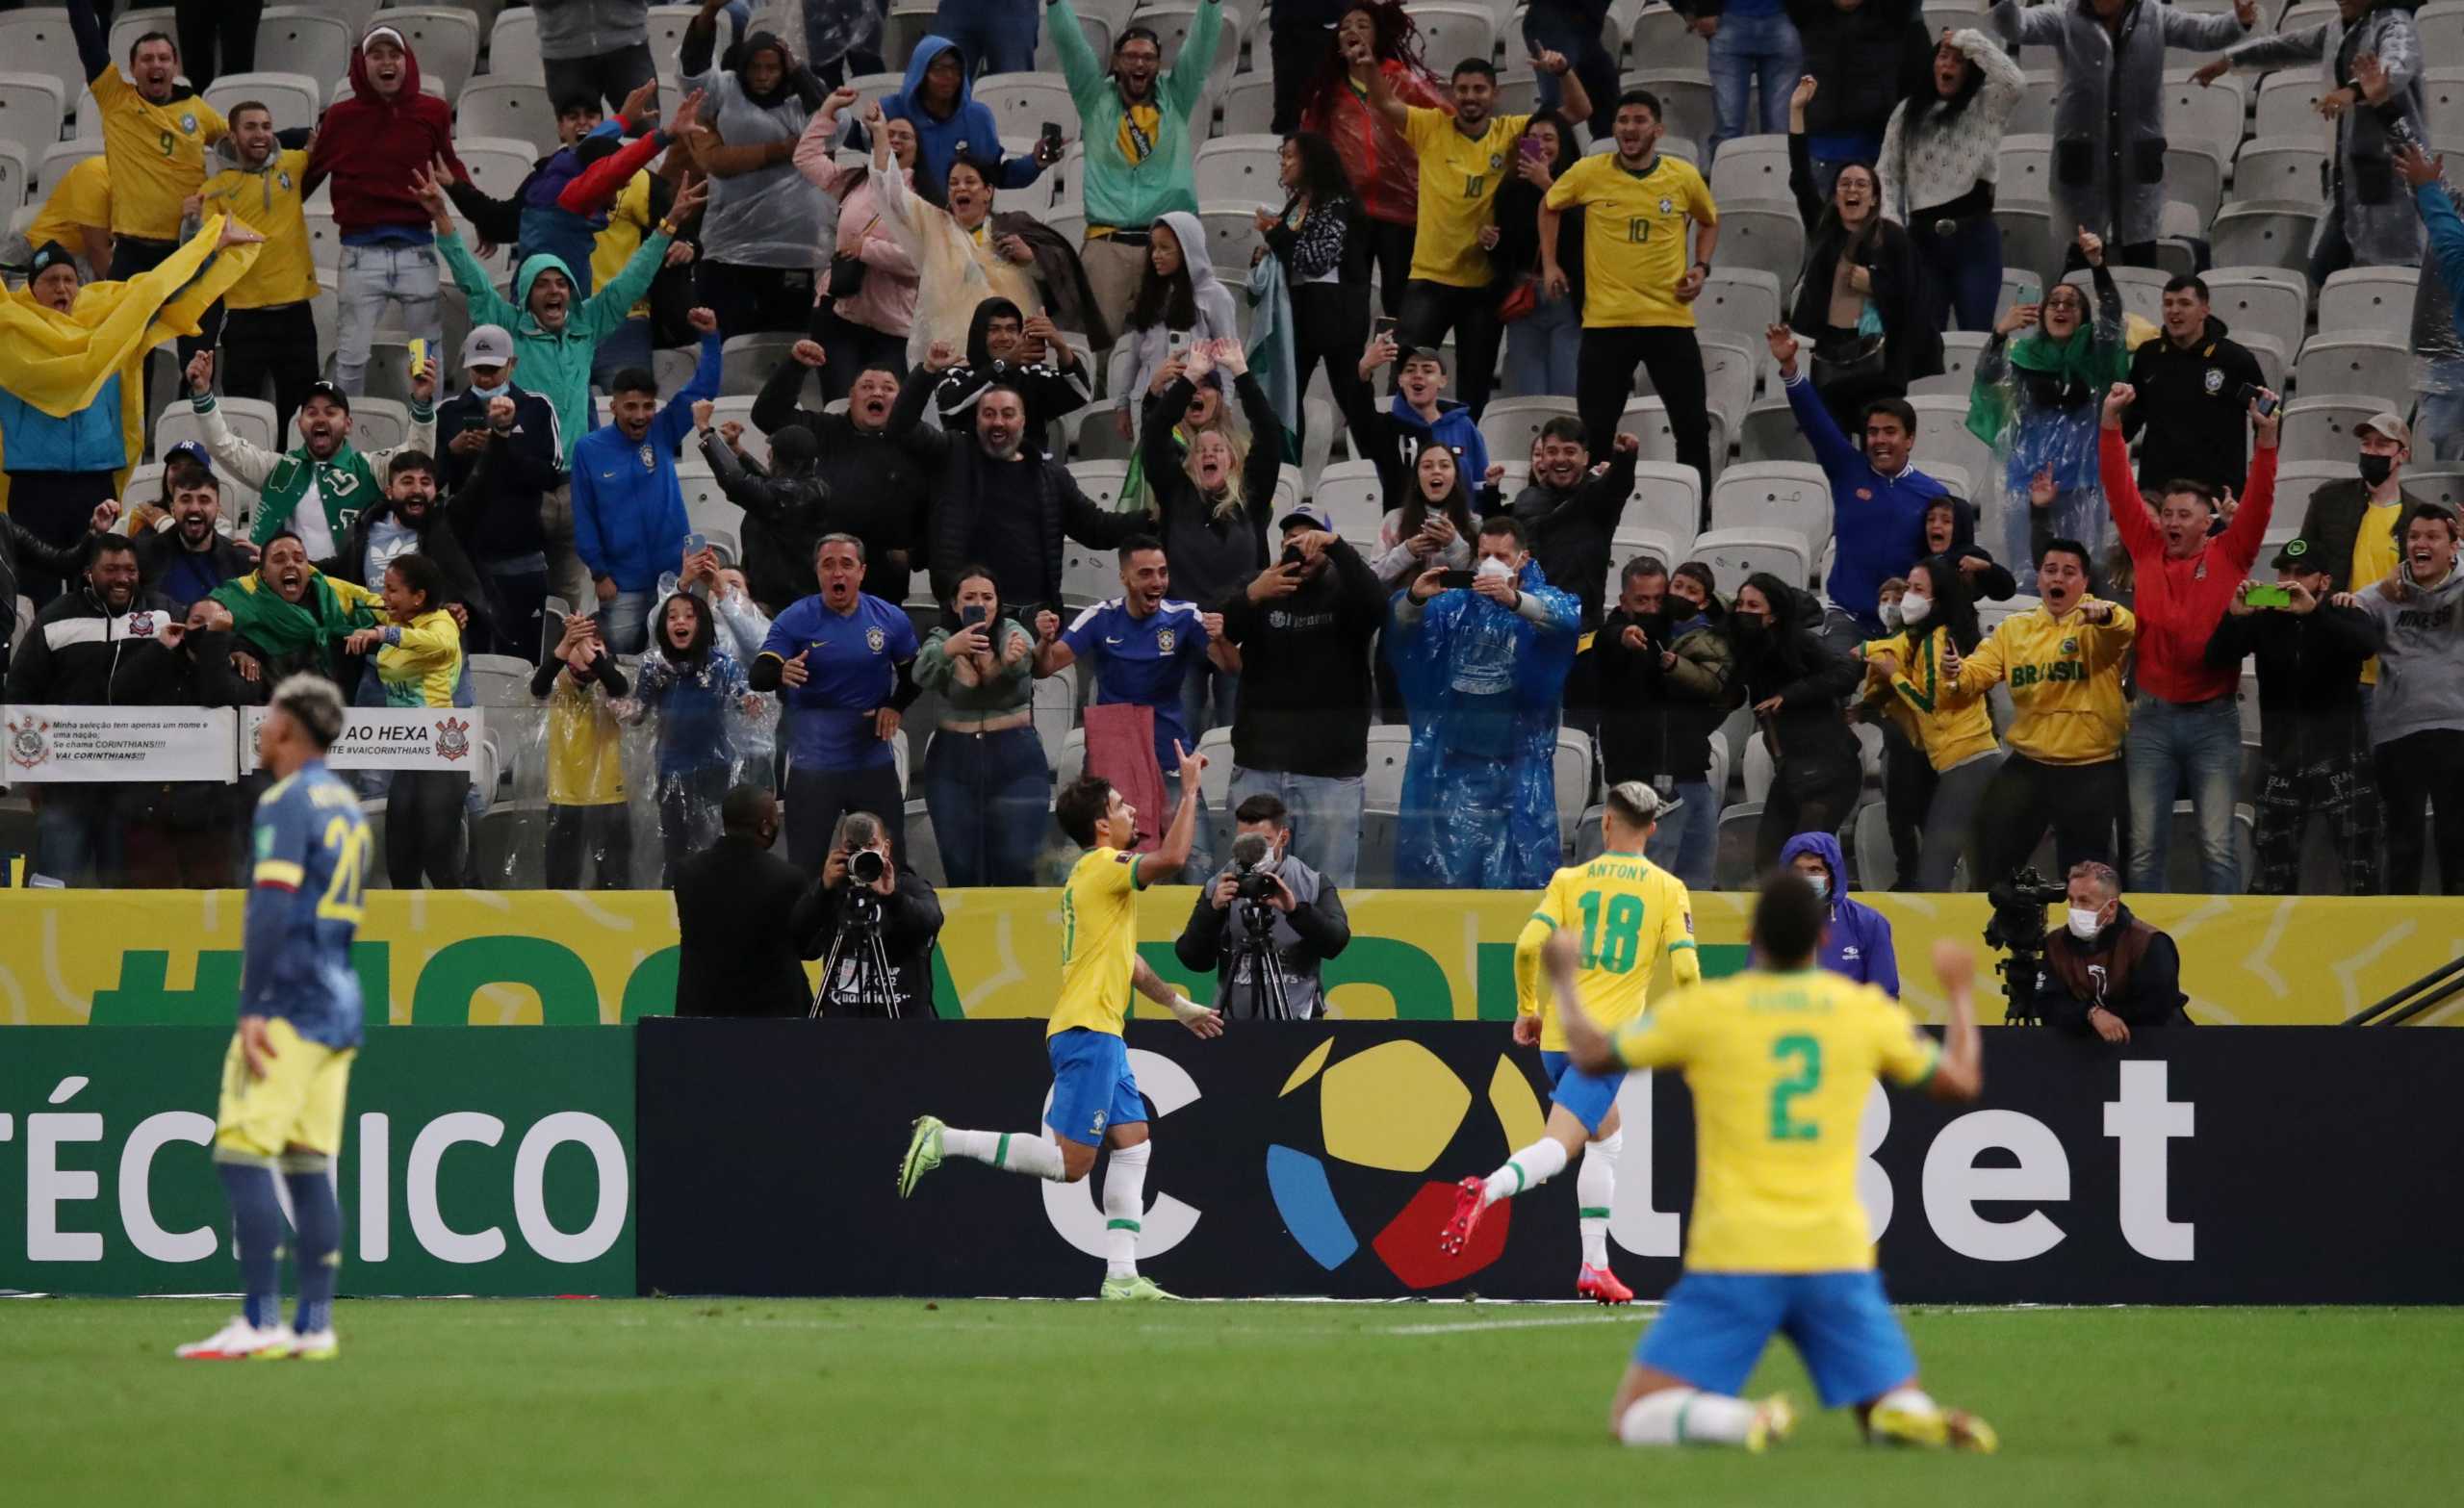 Προκριματικά Μουντιάλ 2022: Έκλεισε εισιτήριο για Κατάρ η Βραζιλία – Άλμα πρόκρισης για το Εκουαδόρ